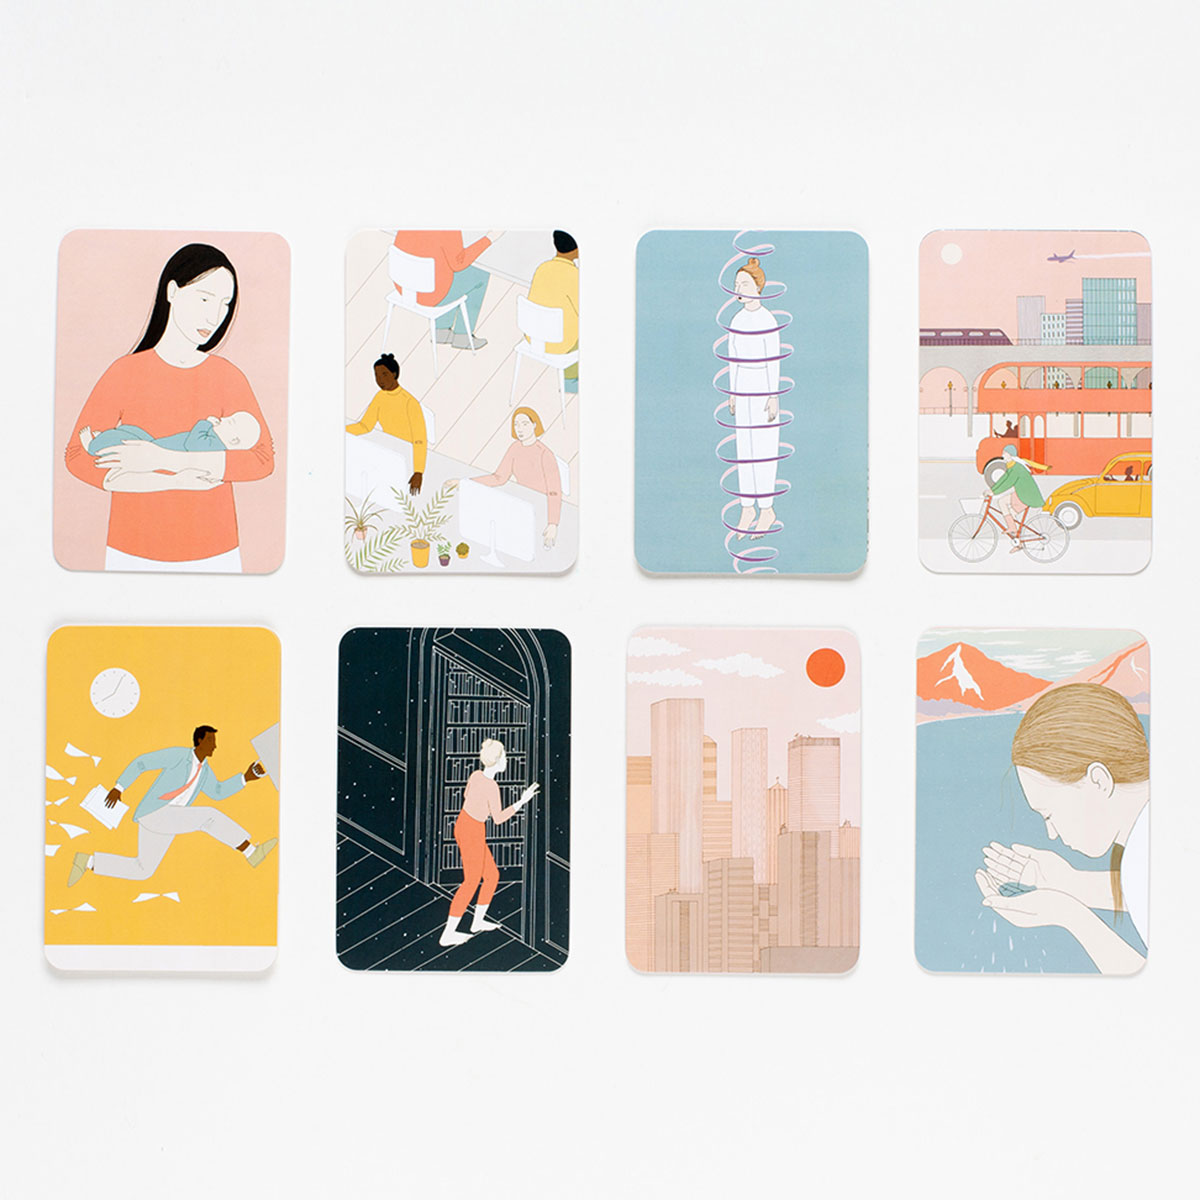 Traumdeuter - Kartenspiel mit 60 schön illustrierten Karten, um herasuzufinden,, was die Träume bedeuten